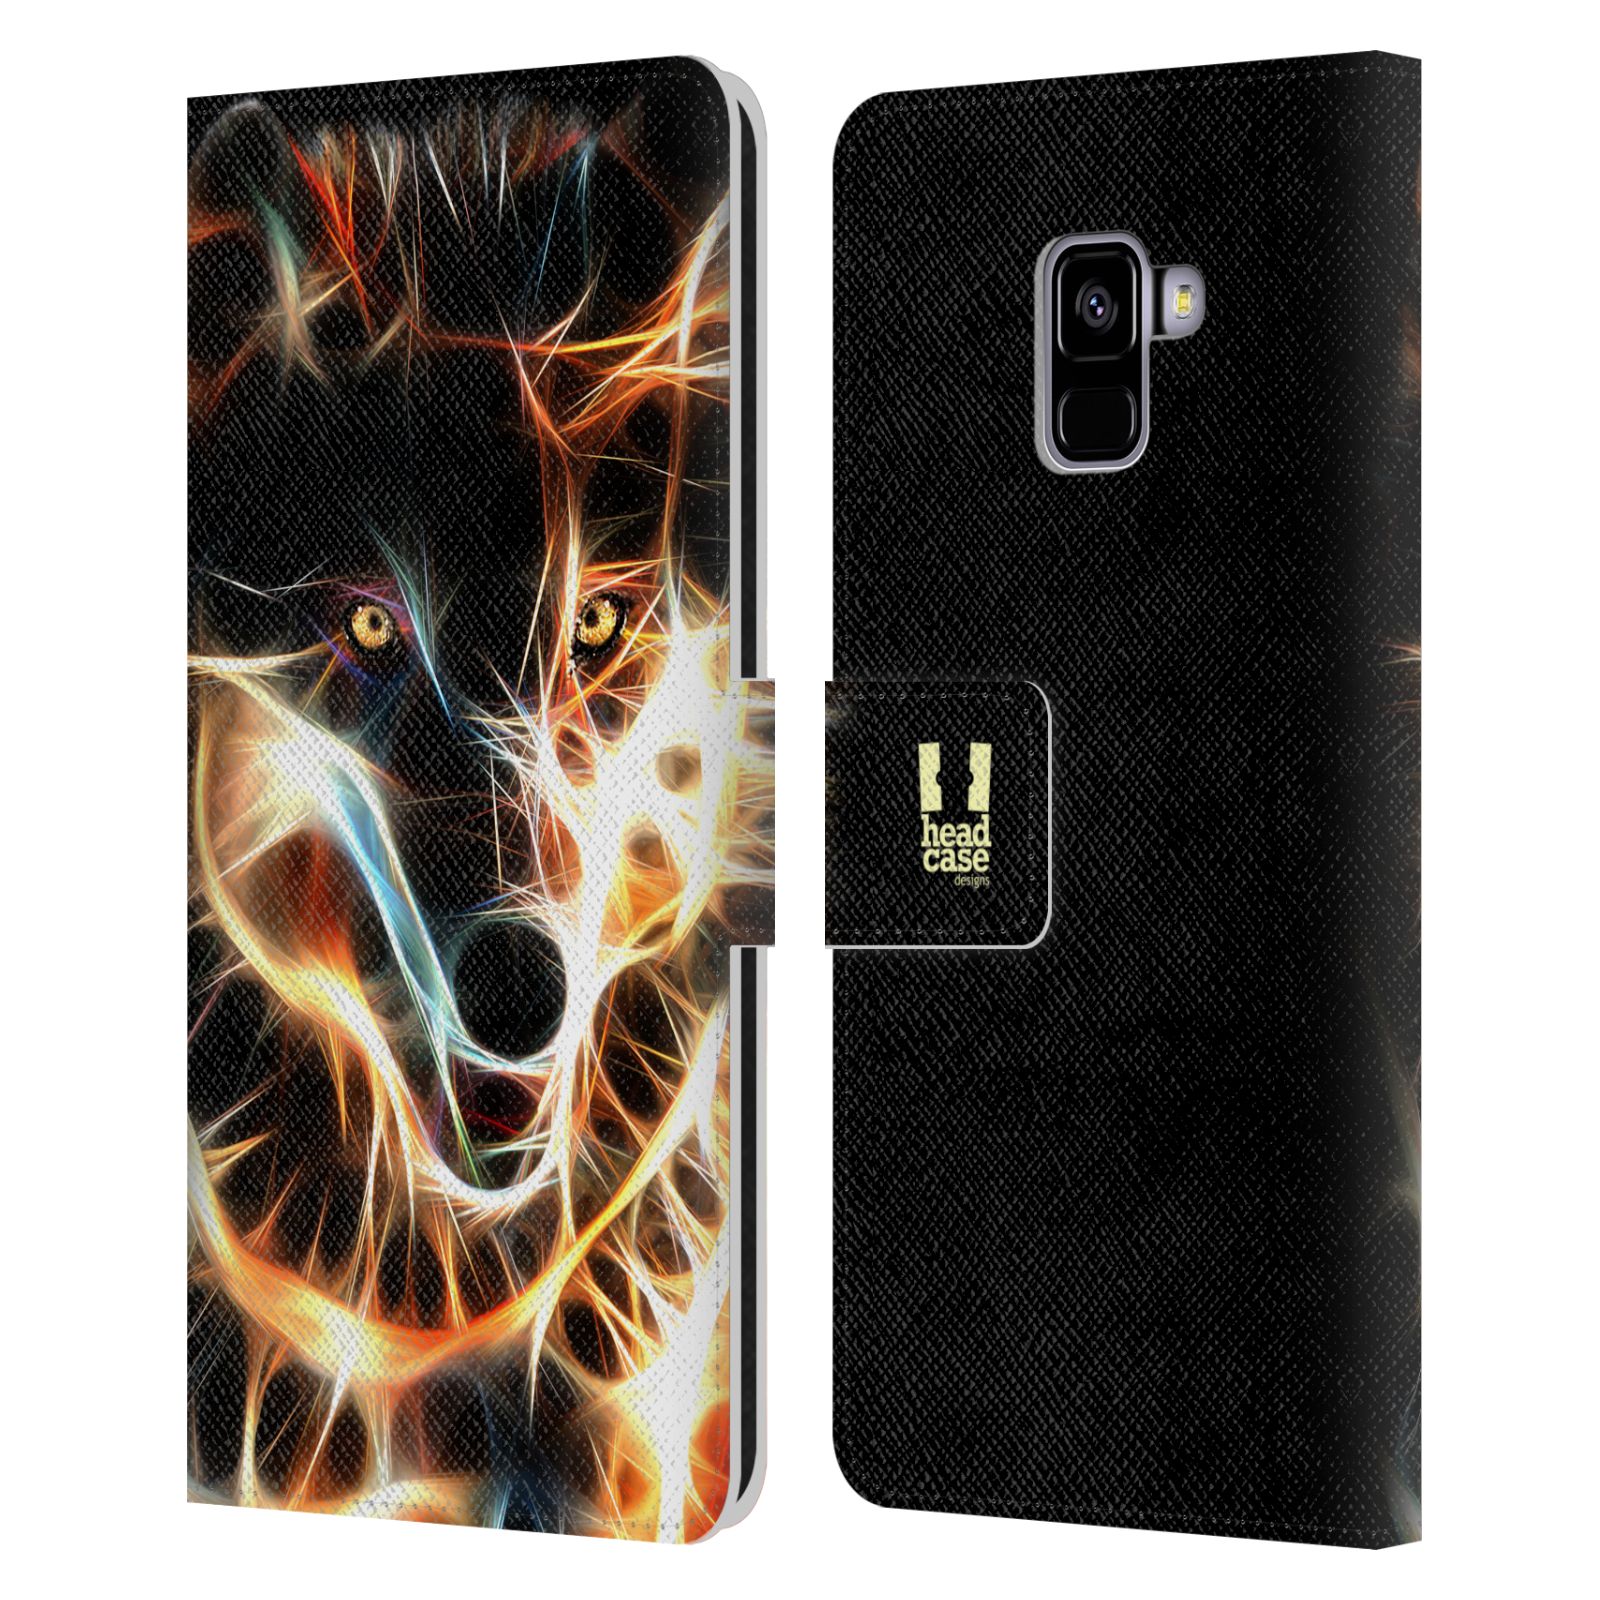 Pouzdro na mobil Samsung Galaxy A8 PLUS 2018 - Head Case - Ohnivý vlk